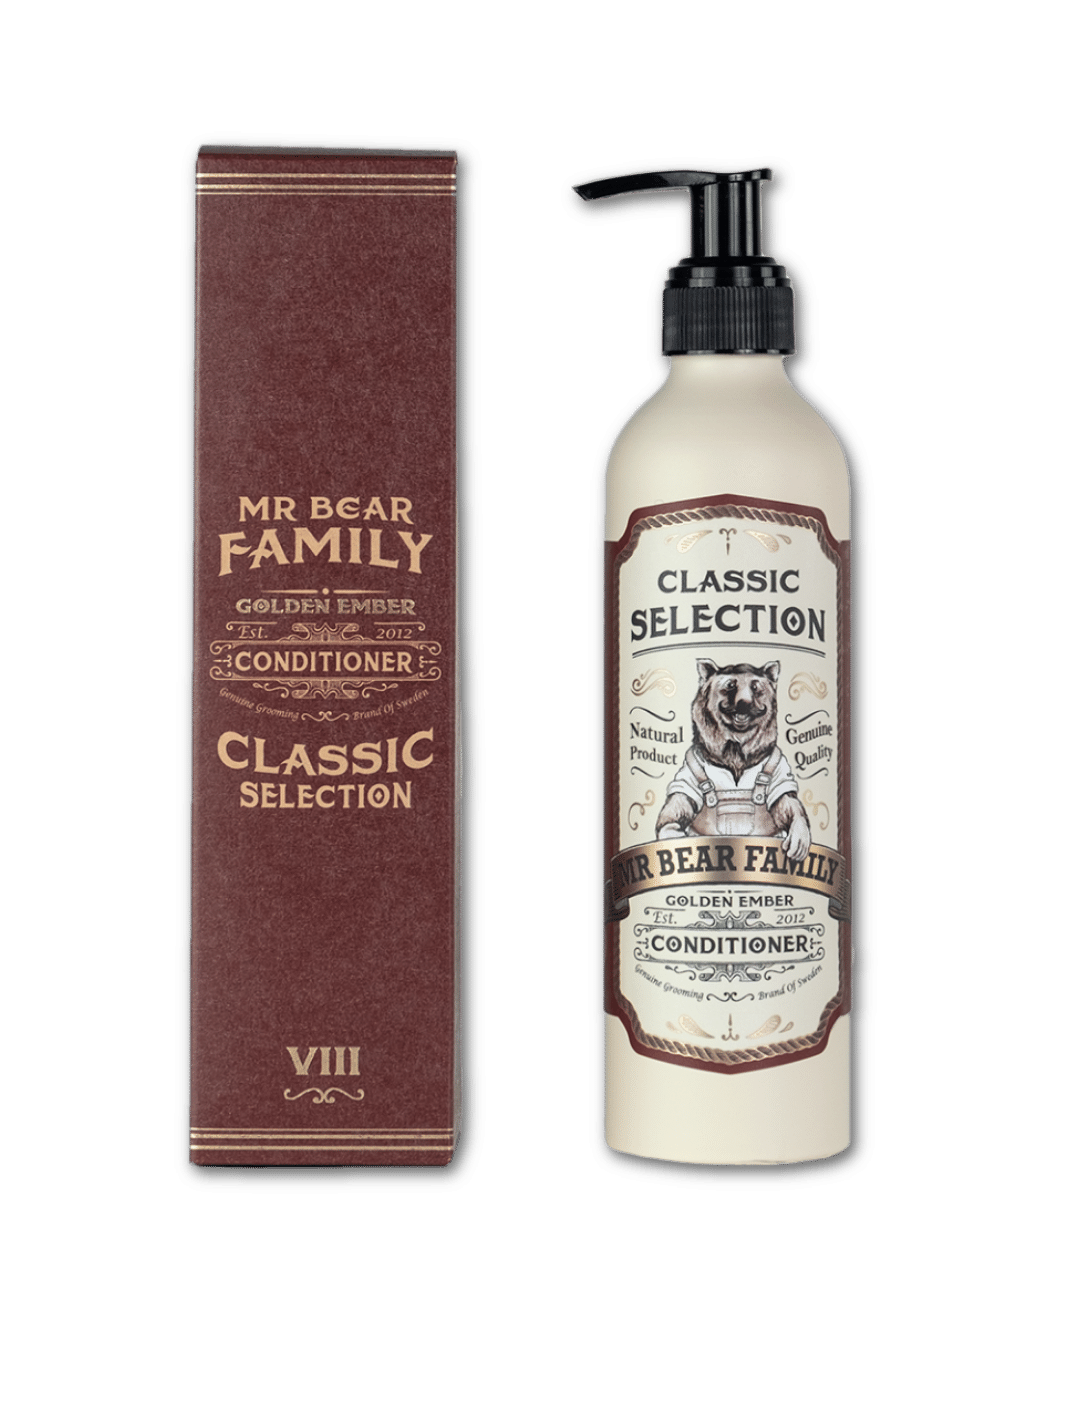 Mr. Bear Family Conditioner Golden Ember, 250ml Flasche, reichhaltiger Haarspülung für glänzendes und geschmeidiges Haar, in einer weißen Flasche mit goldenem Deckel und Etikett, erhältlich bei Phullcutz.